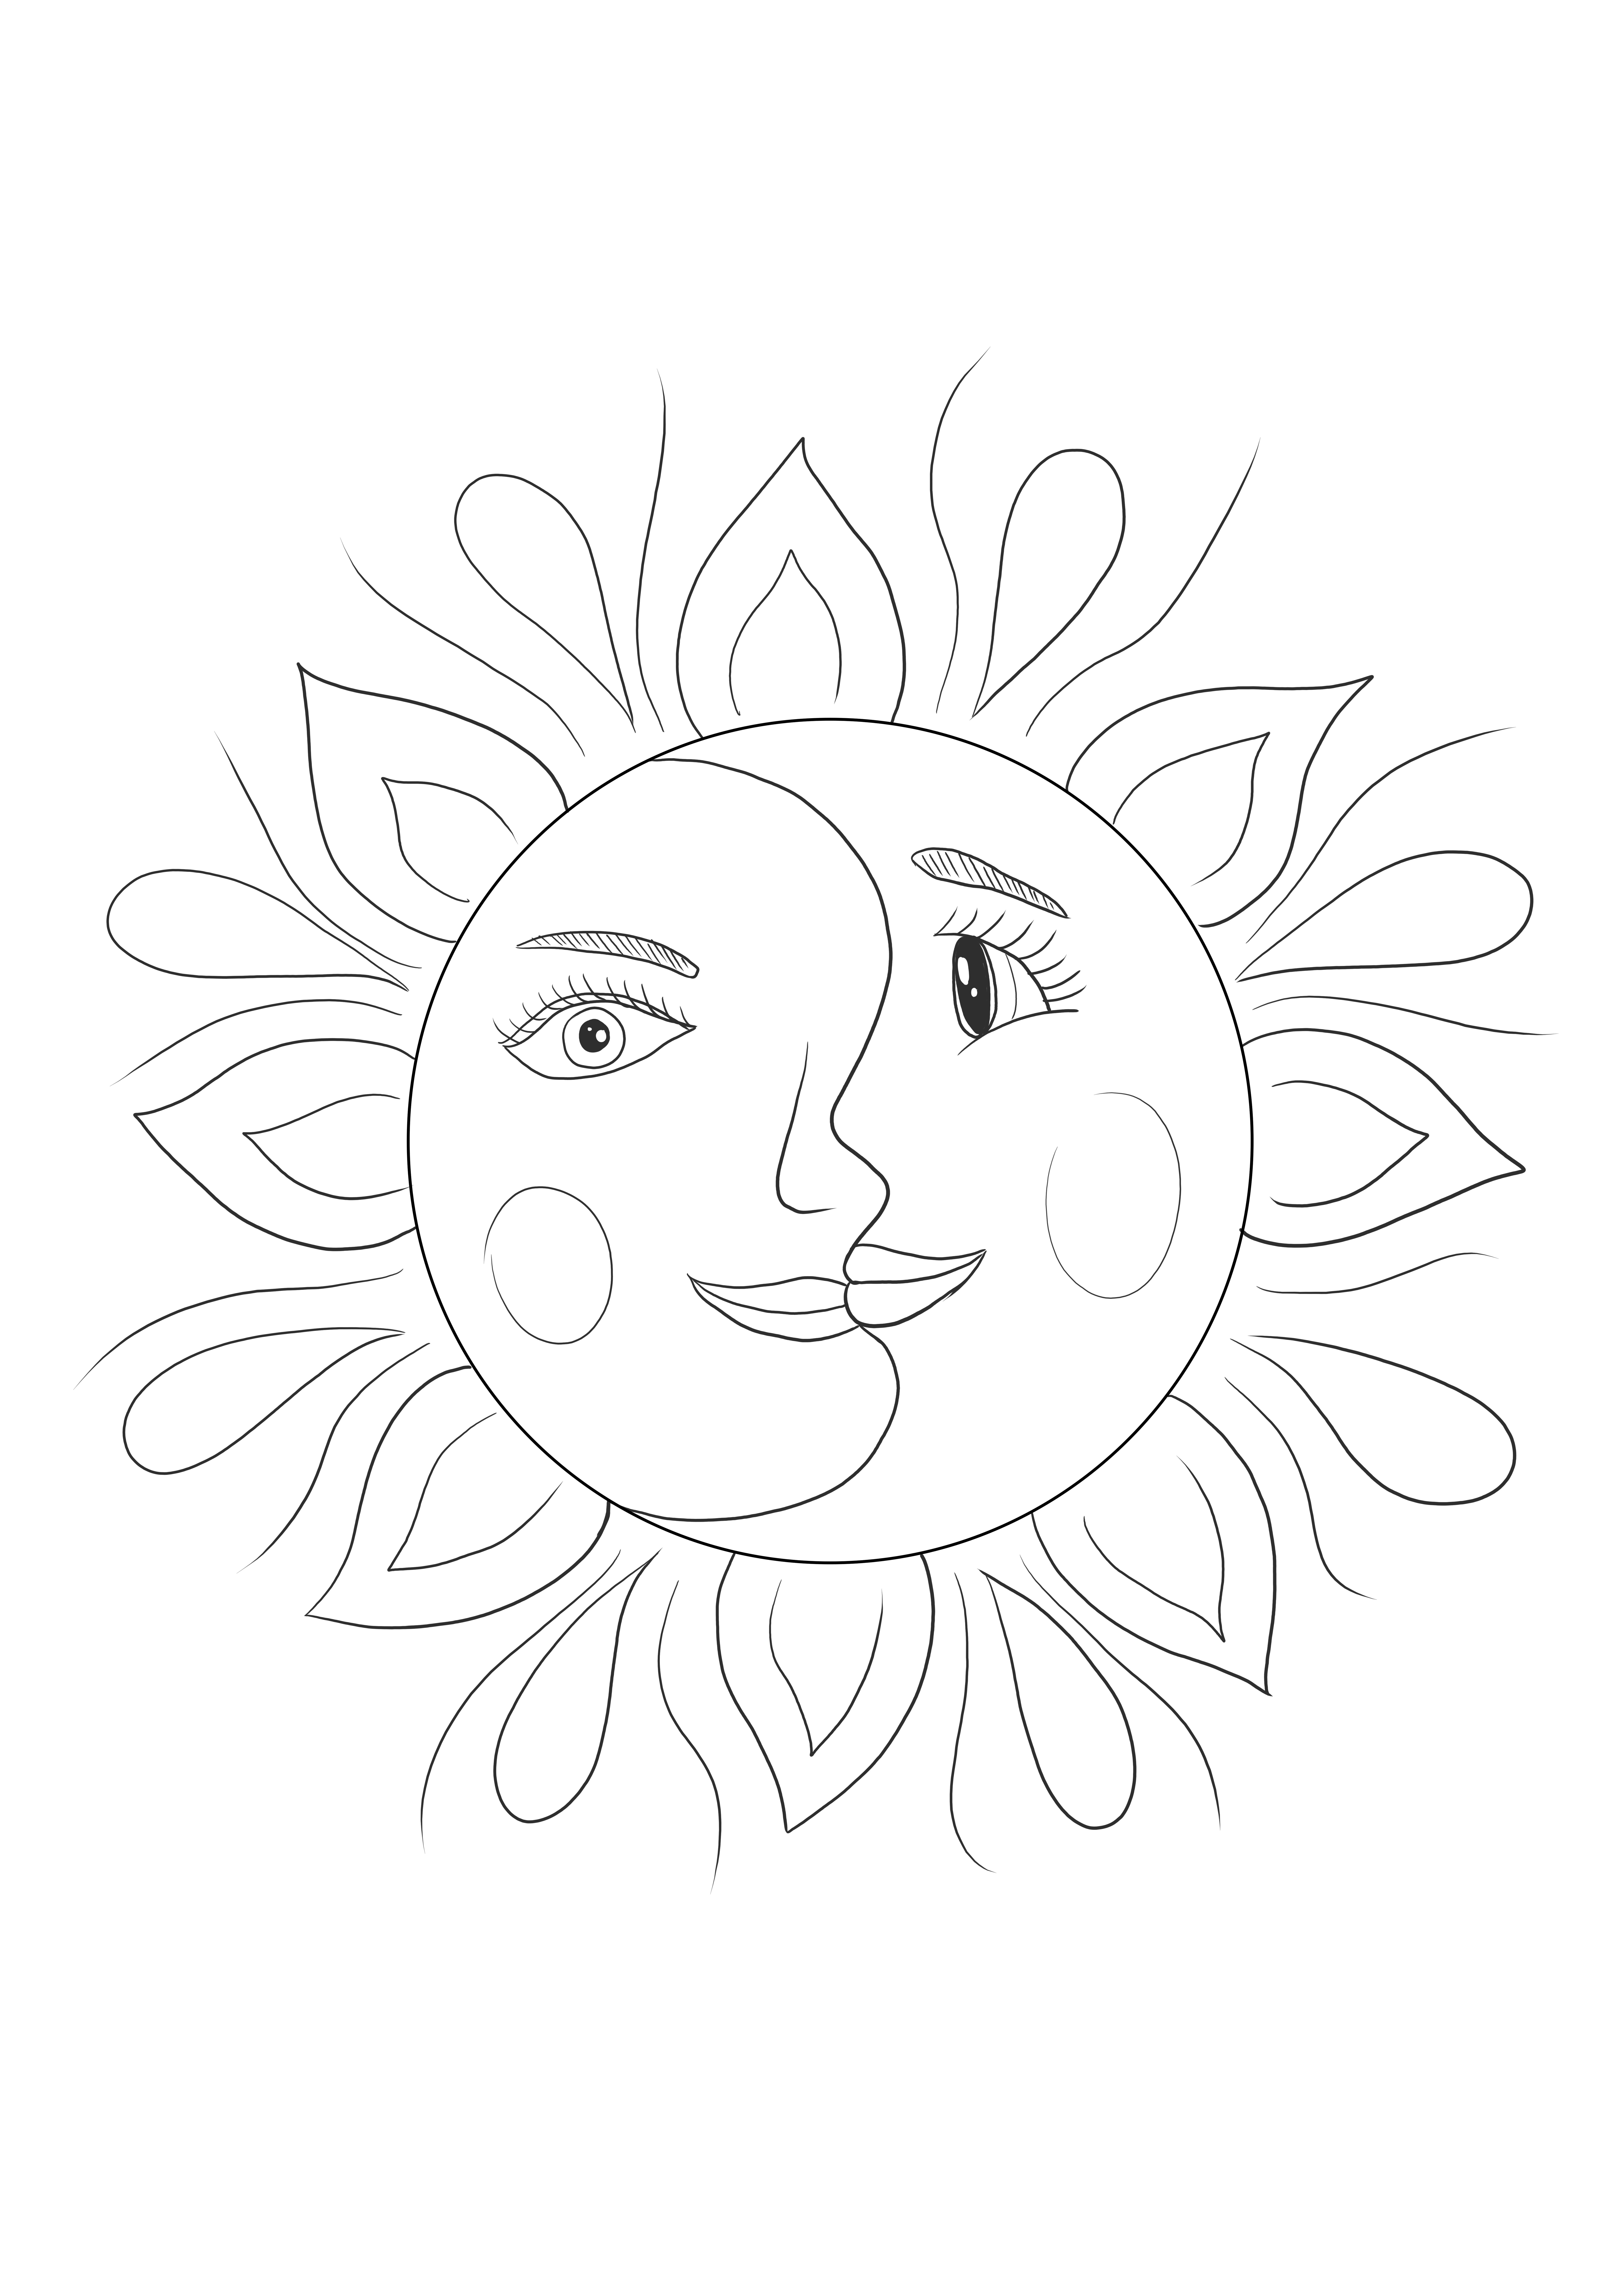 Słońce i księżyc w psychodelicznym stylu artystycznym dla miłośników sztuki - dzieci i dorosłych